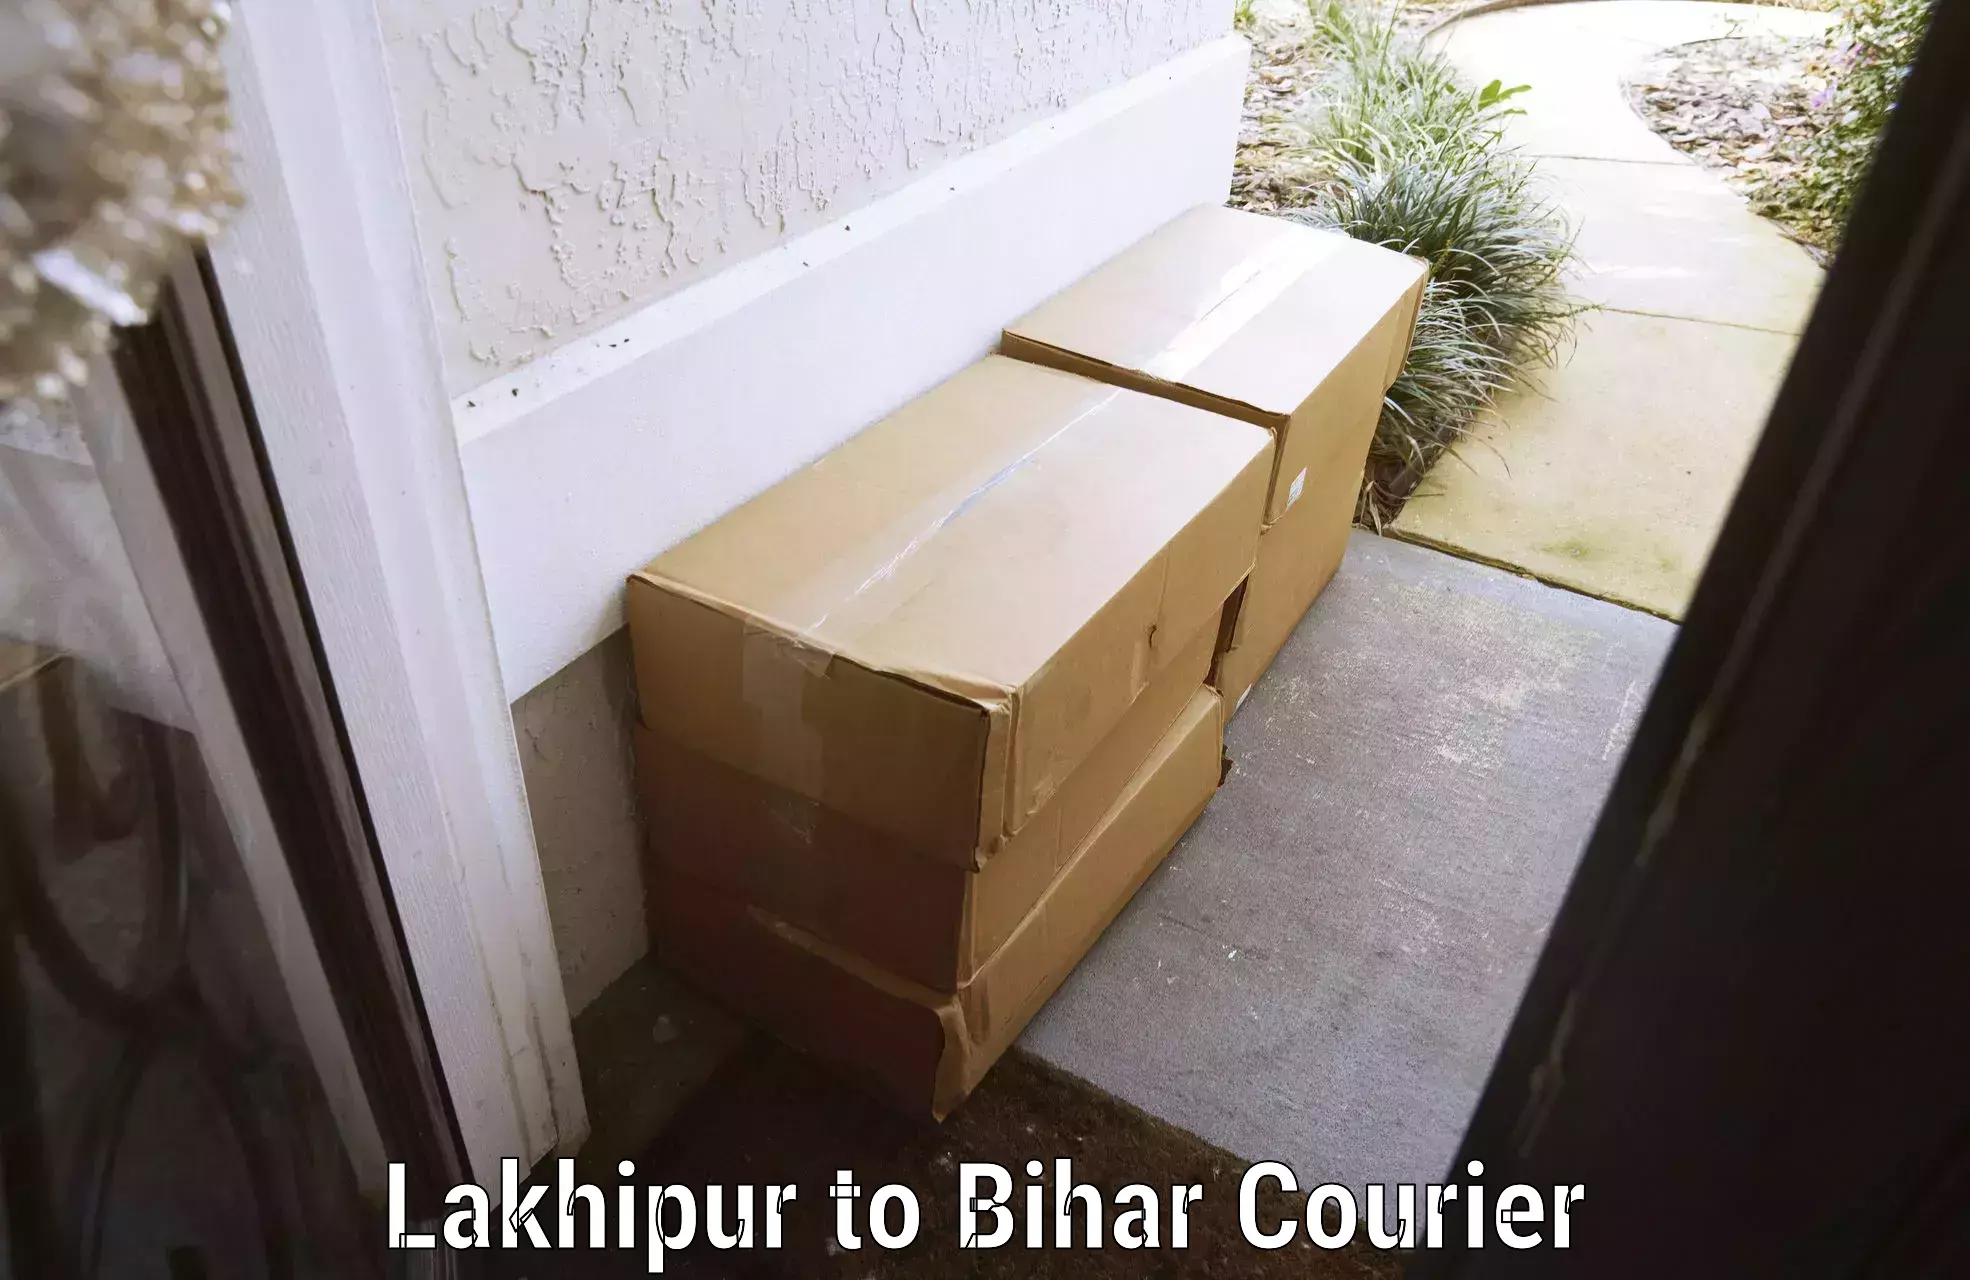 Same day luggage service Lakhipur to Bihar